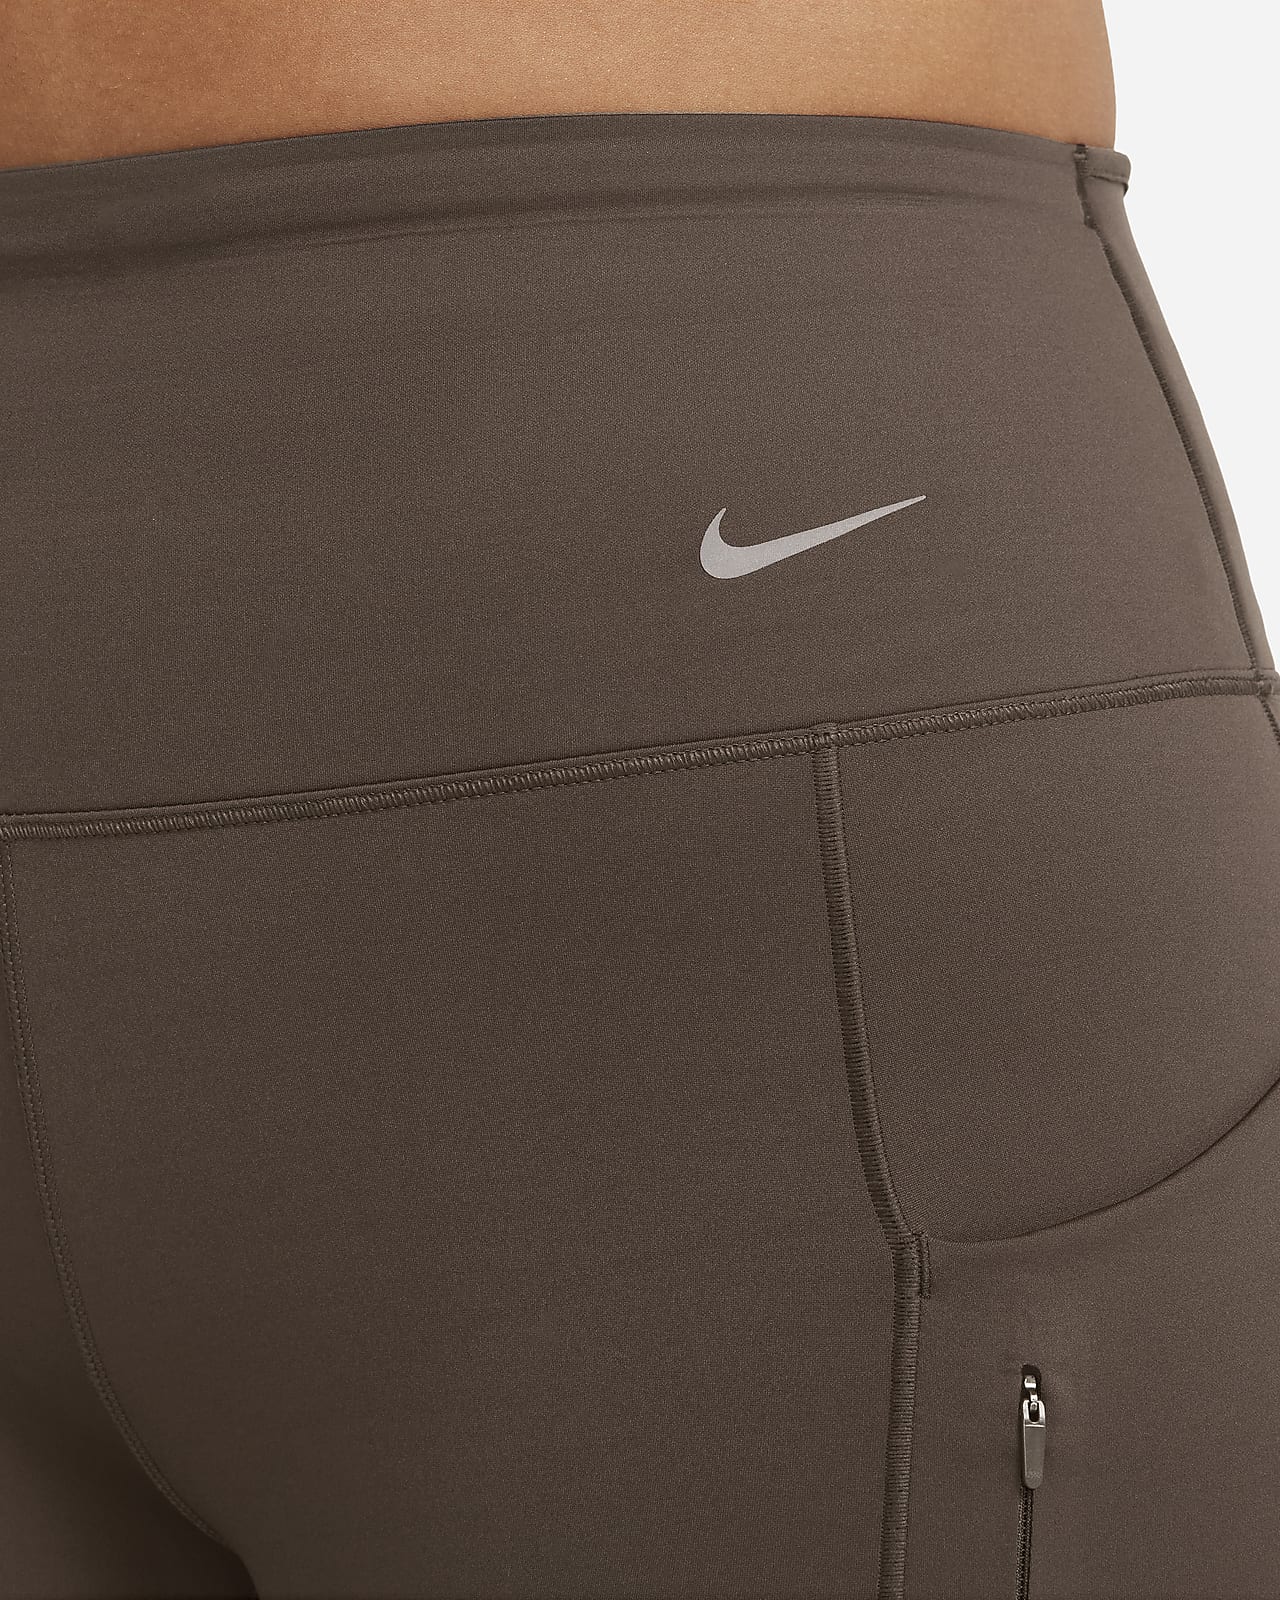 Compression-waist pocket legging, Nike